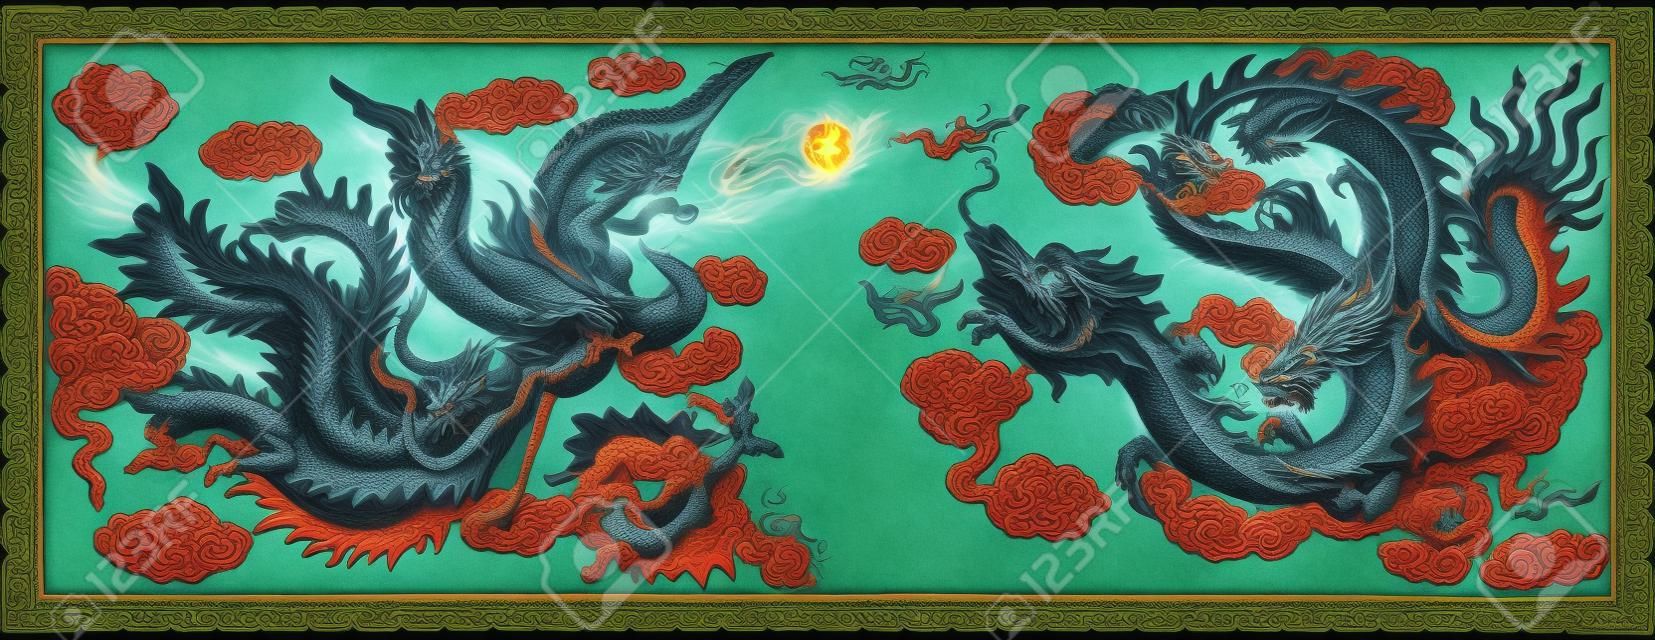 Le statut de dragon et phénix